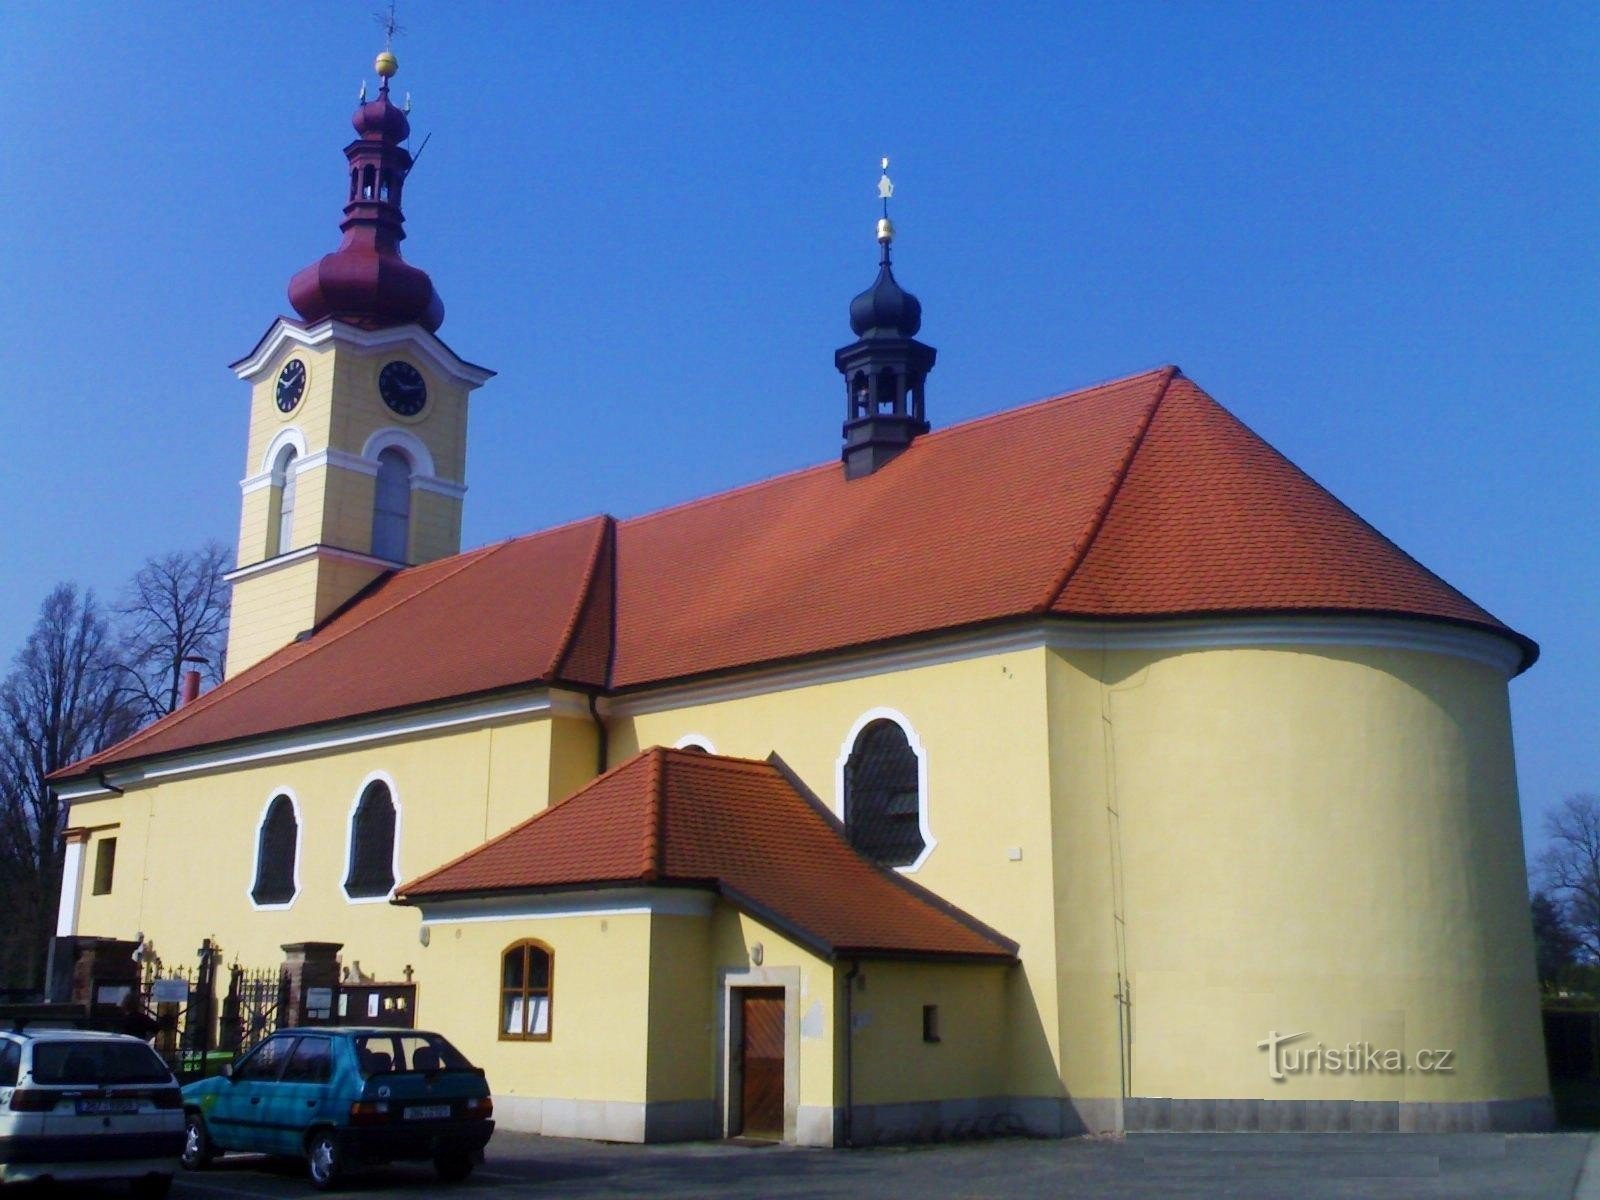 Пухов - Церковь св. Павел